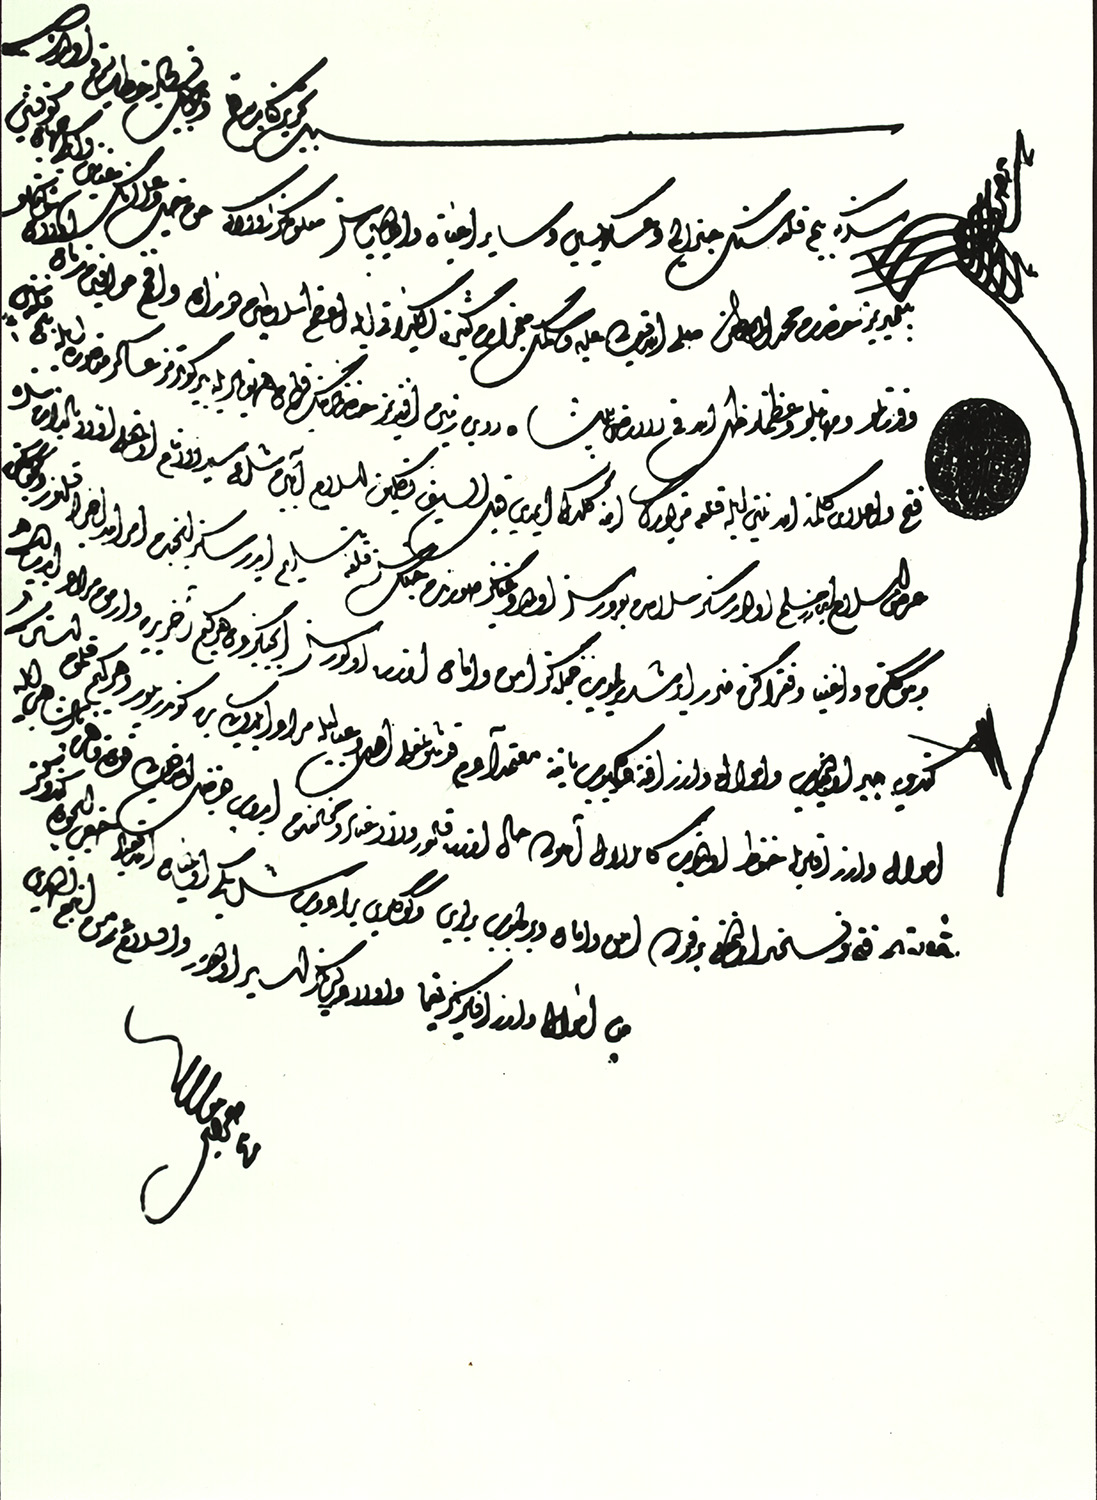 Arabisch verfasste Schreiben, nicht mehr im Original erhalten